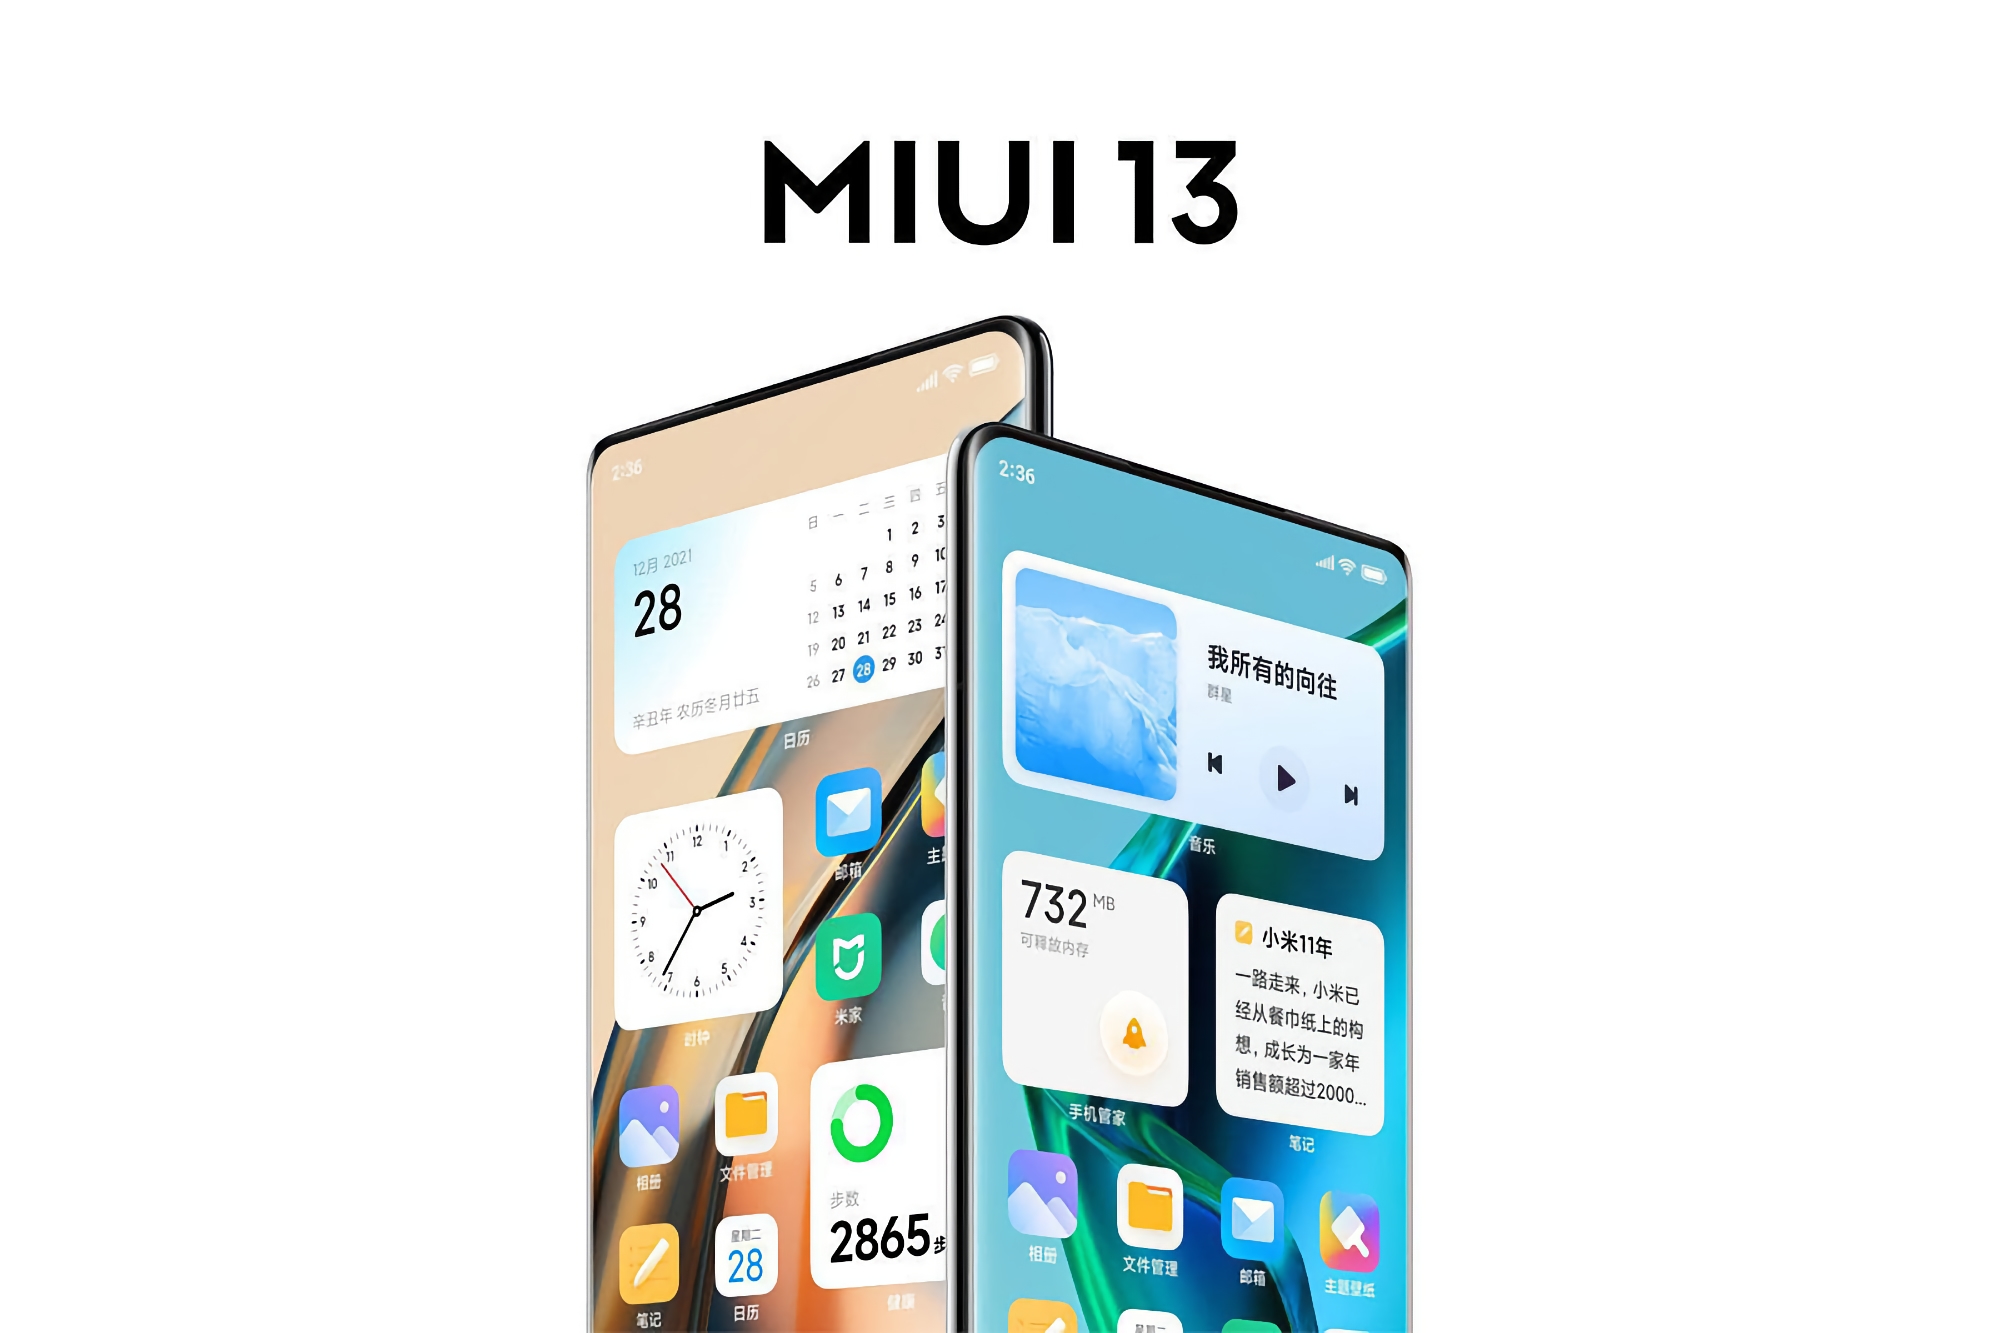 Dwa popularne smartfony Xiaomi otrzymały aktualizację MIUI 13 z Androidem 12 na rynku globalnym